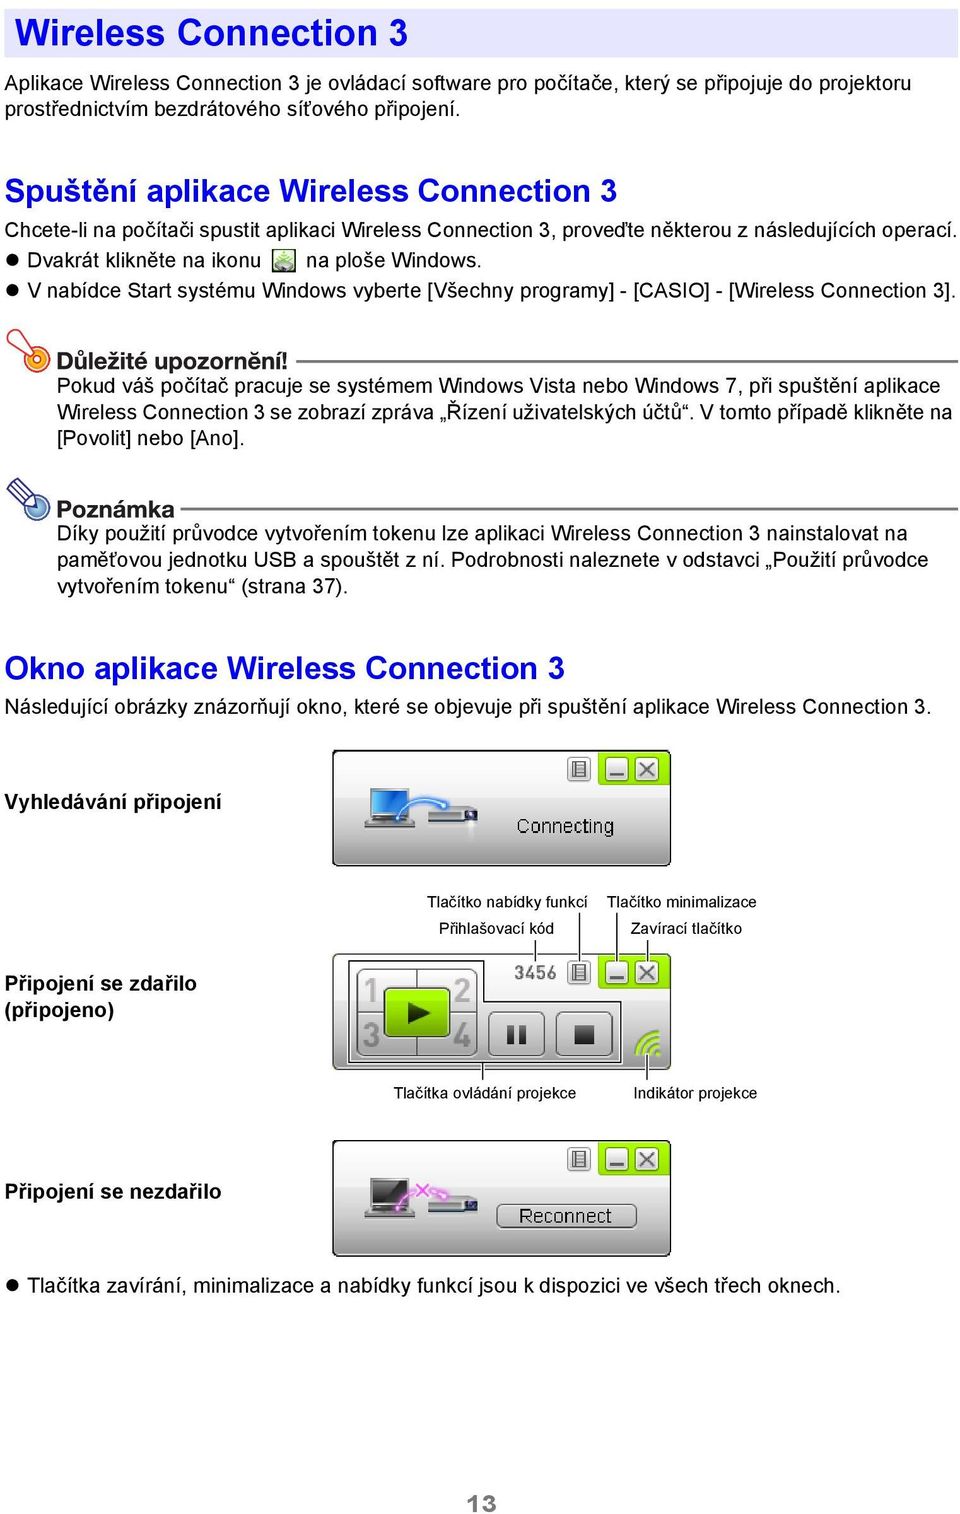 V nabídce Start systému Windows vyberte [Všechny programy] - [CASIO] - [Wireless Connection 3].